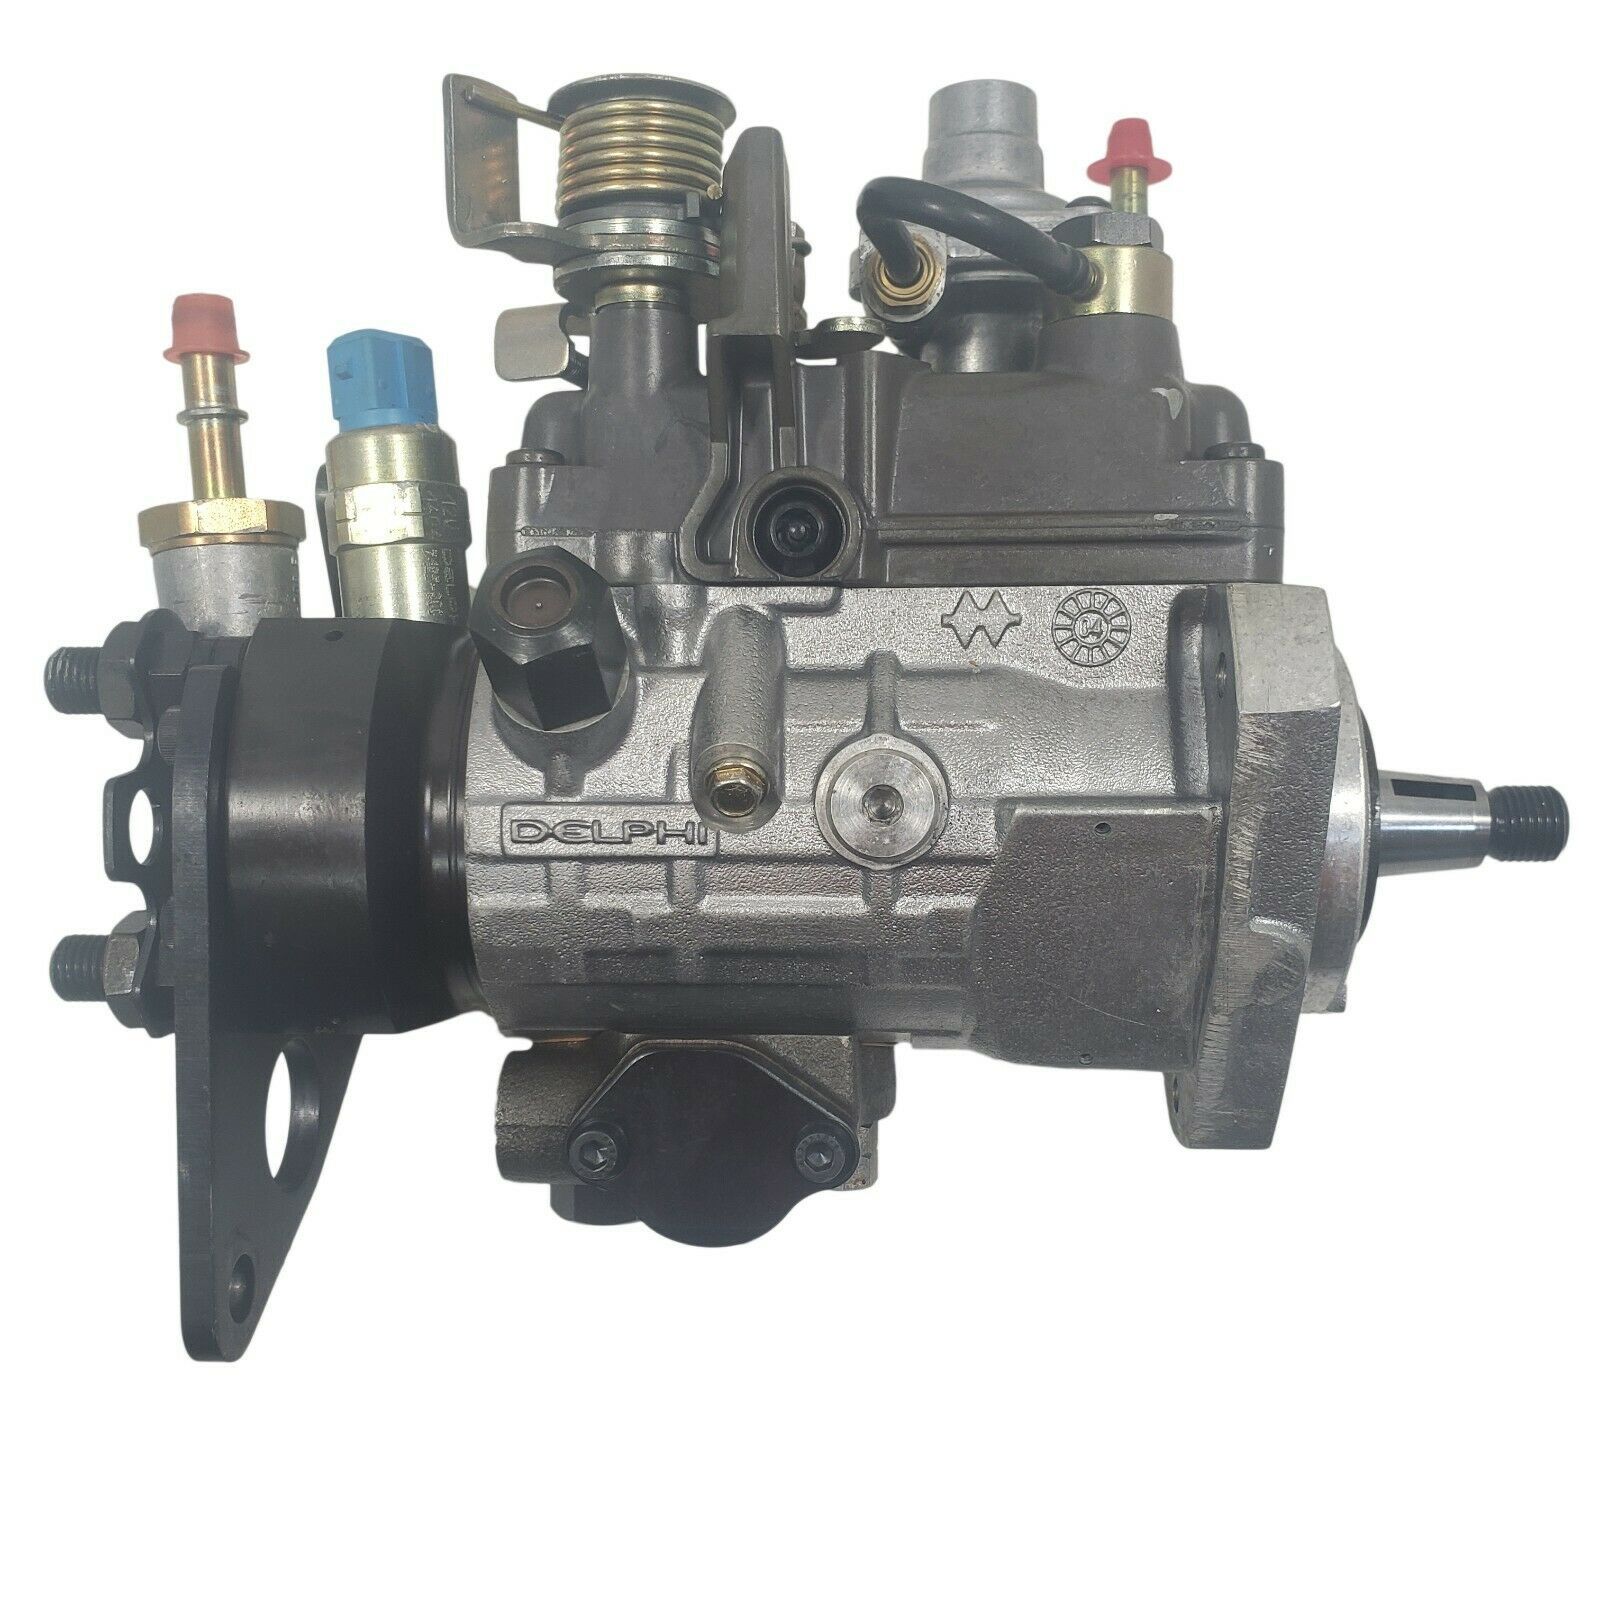 Delphi 1398 Fuel Injection Pump Perkins Engine 9320a212g 9323a350g